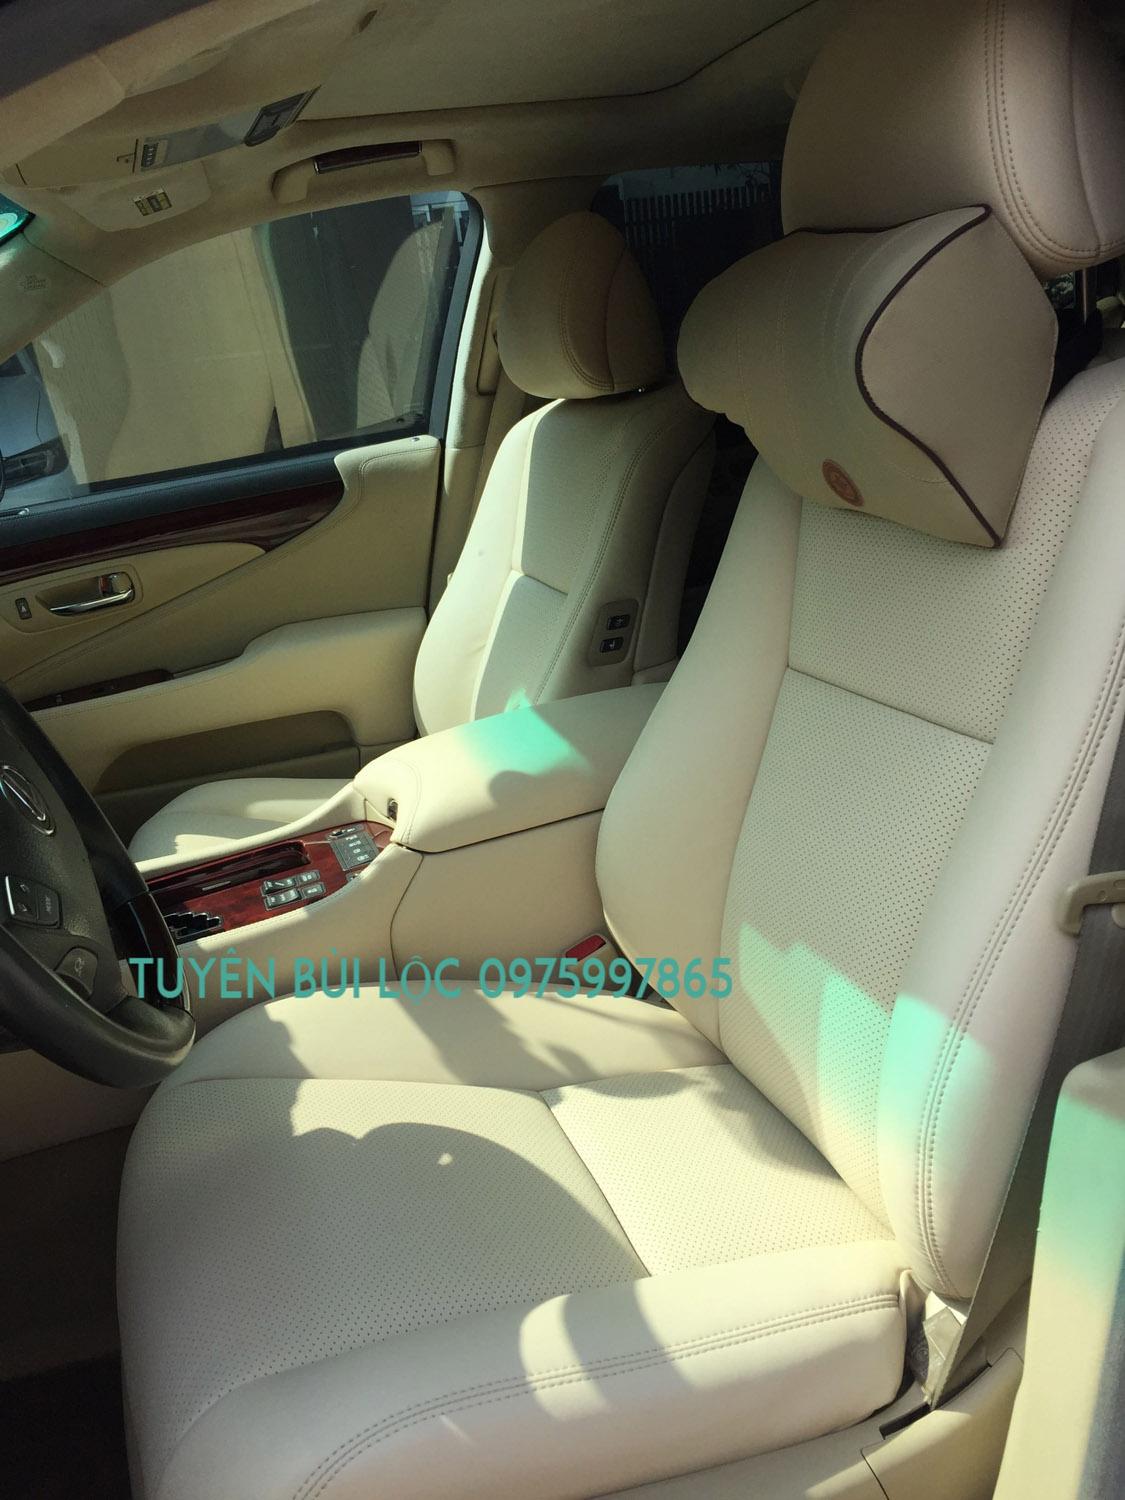 Bọc ghế da xe LEXUS LS600H - Phục hồi ghế Lexus  ls 600h uy tín chất lượng